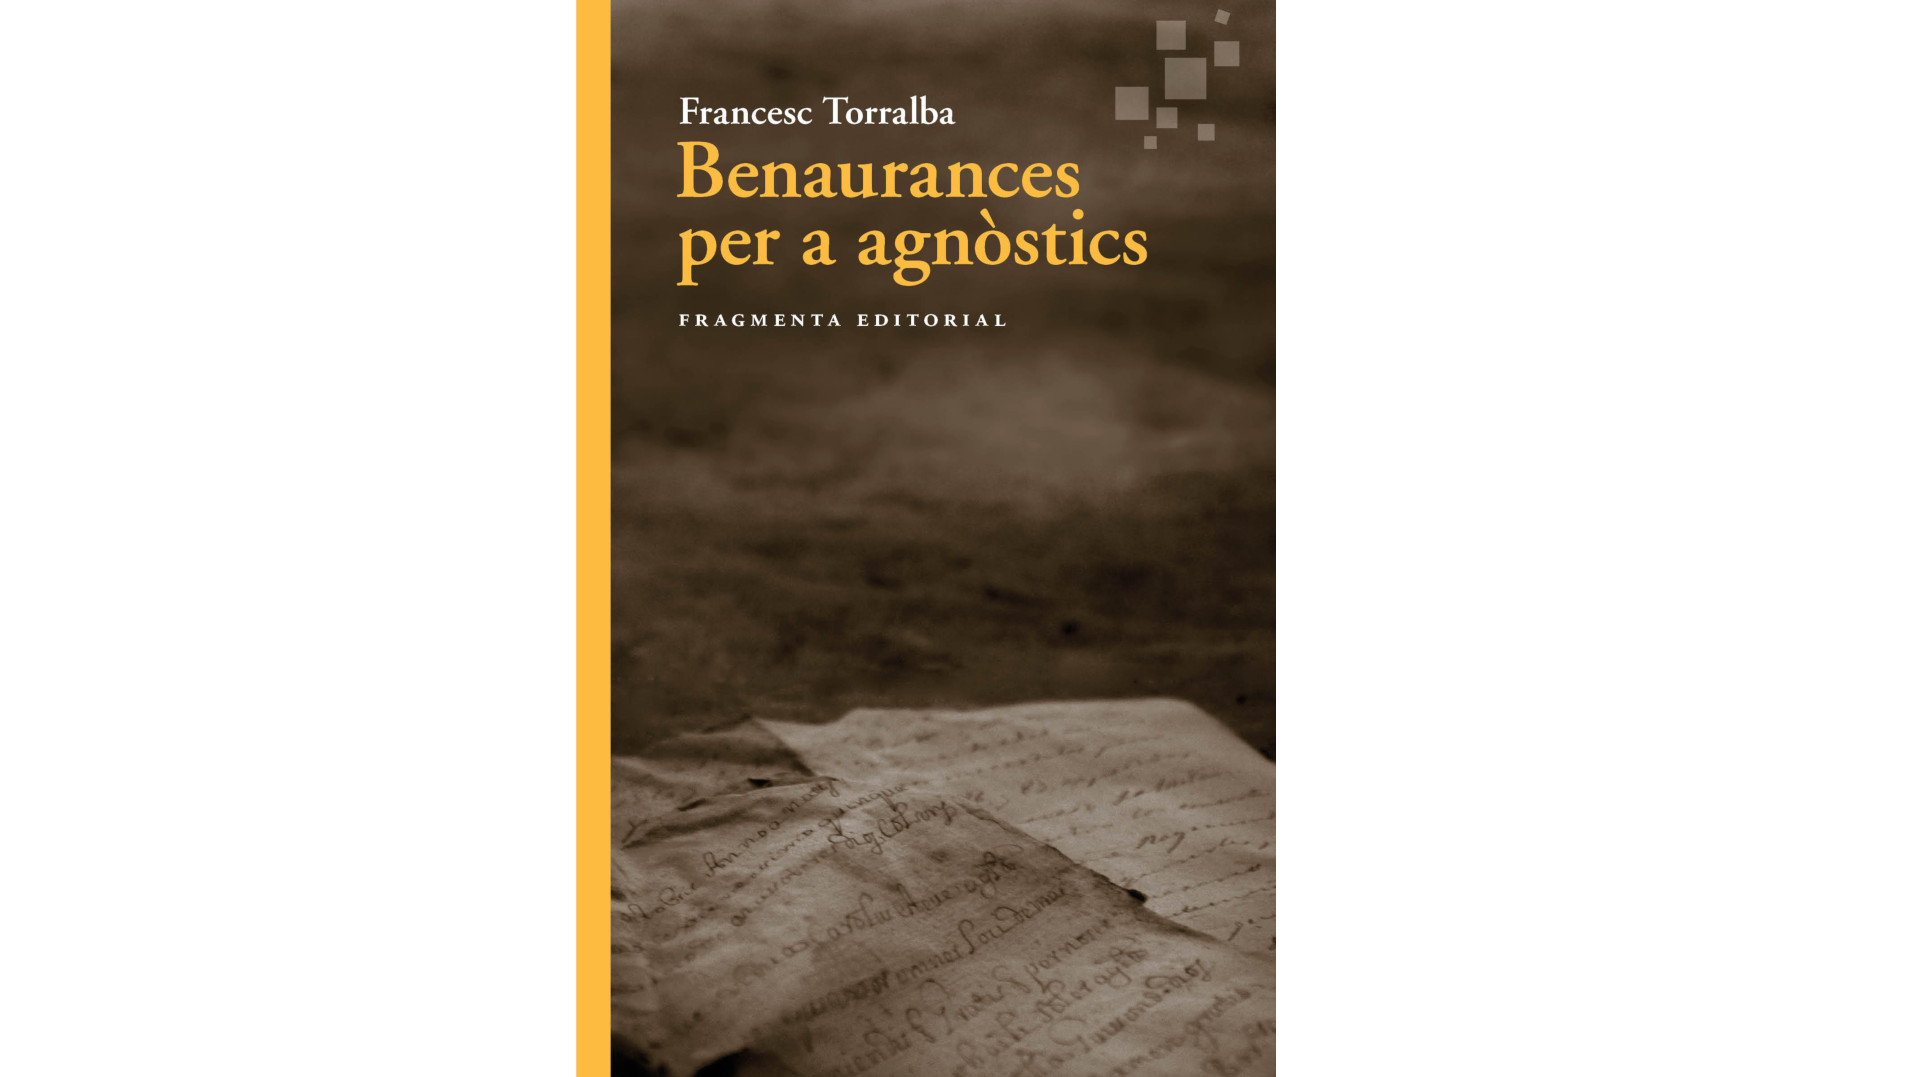 Presentació del llibre “Benaurances per a agnòstics”